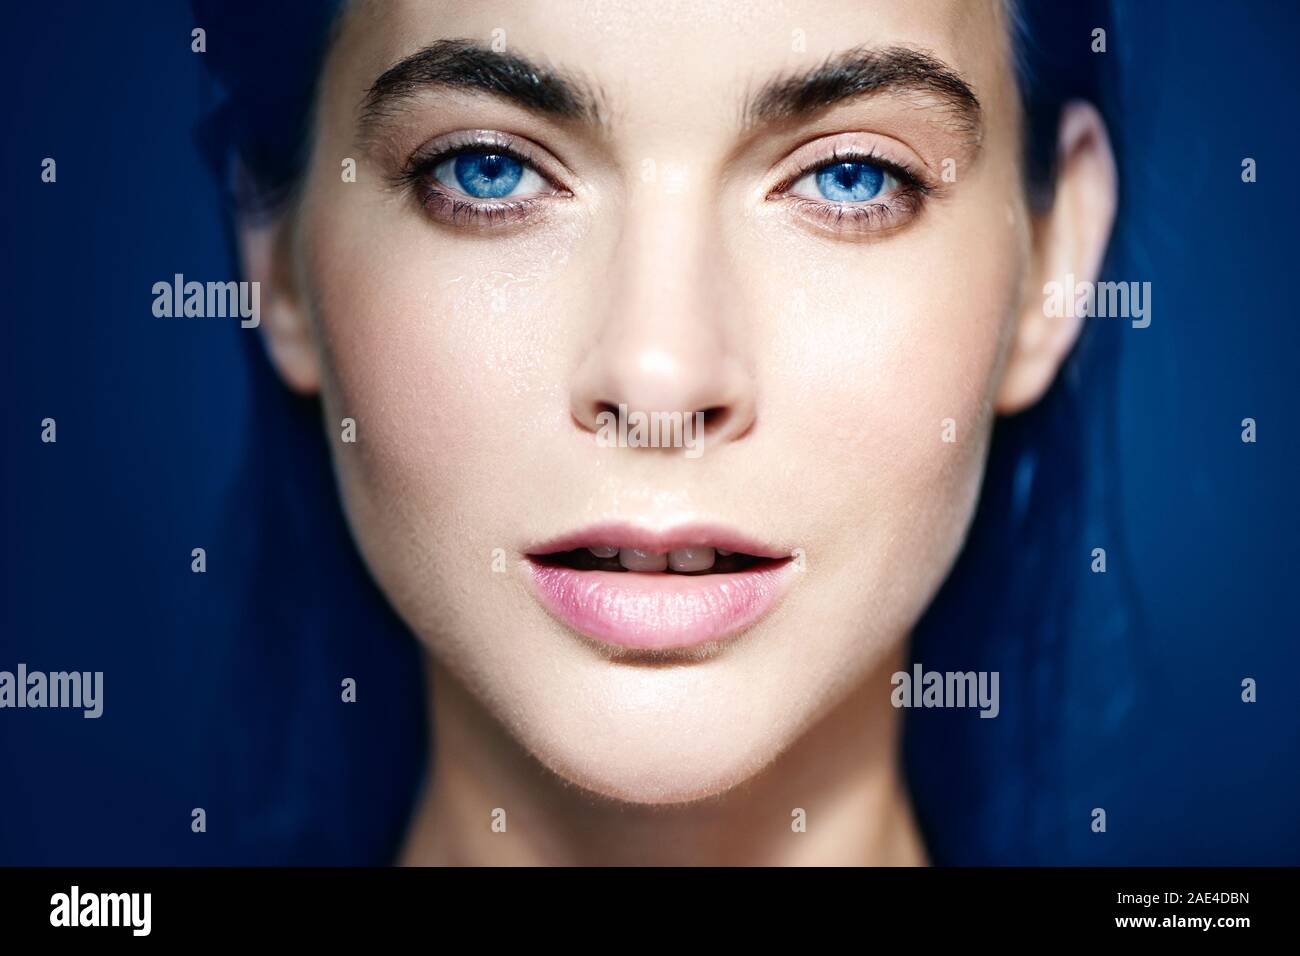 Fermé Portrait de belle femme aux yeux bleus sur fond bleu. Banque D'Images